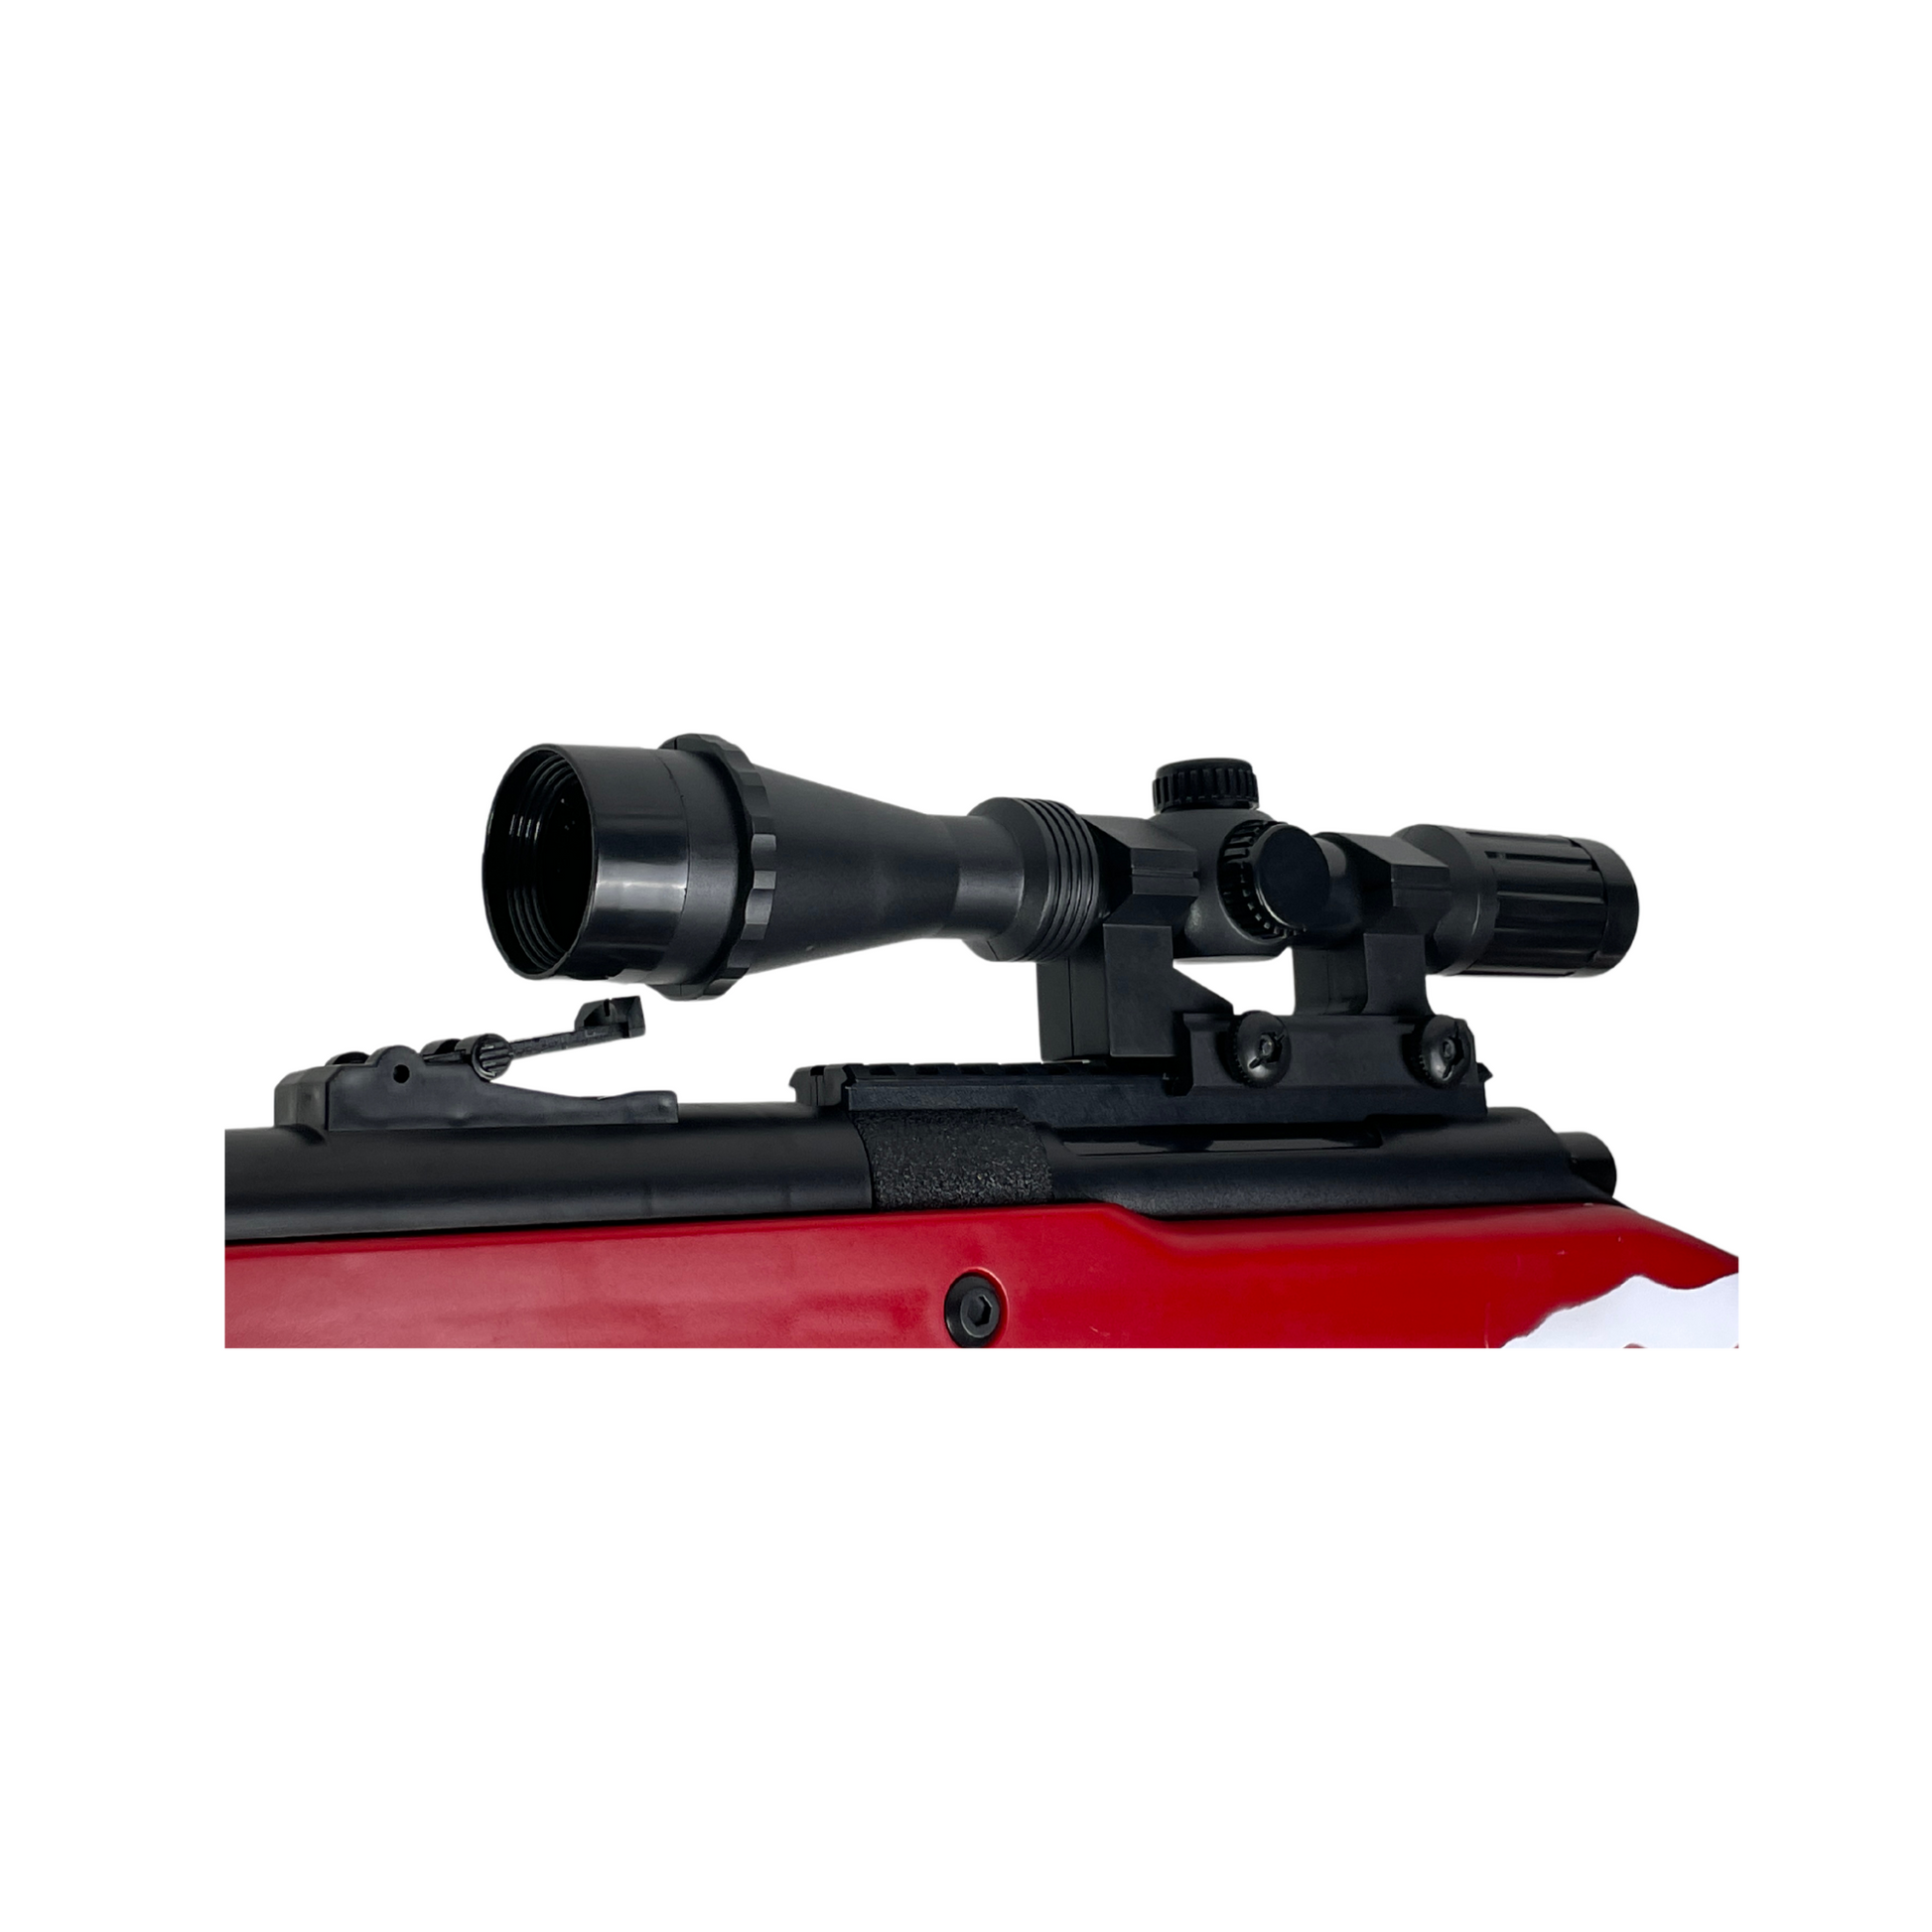 AWM Sniper Rifle Gel Blaster For Pro – BRRRRT